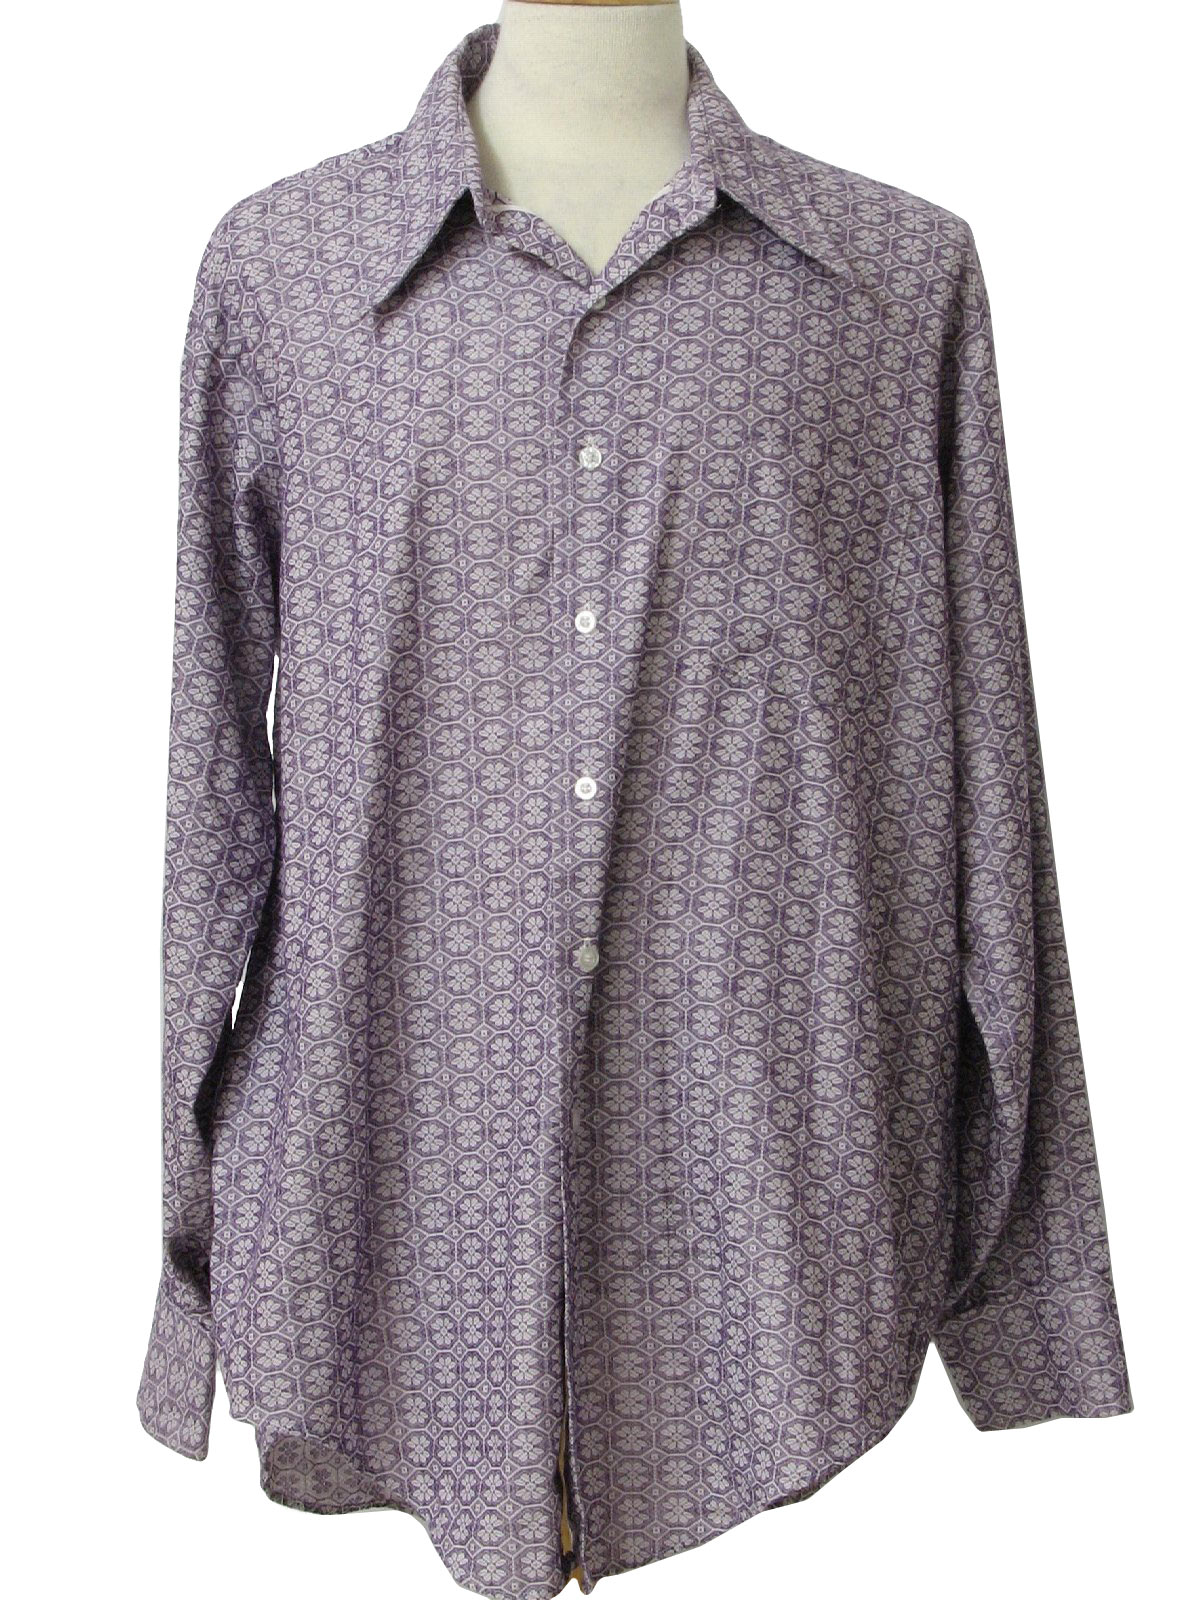 Van Heusen 1970s Vintage Shirt: 70s -Van Heusen- Mens dusty purple and ...